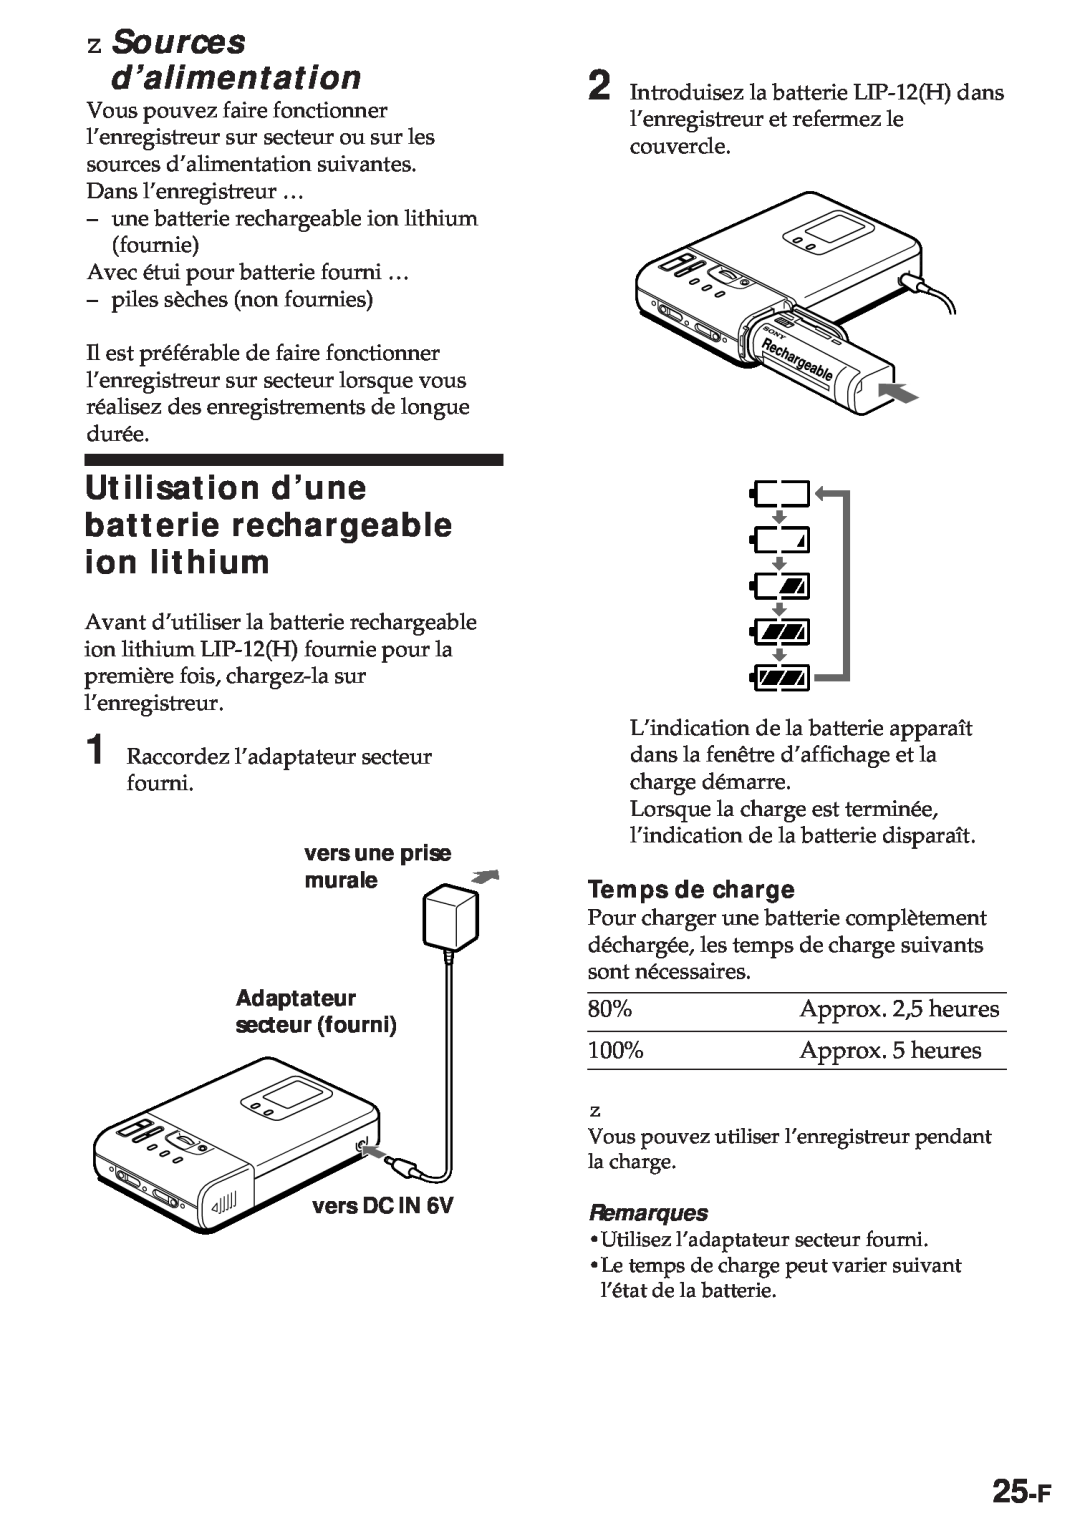 Sony MZ-R30 z Sources d’alimentation, Utilisation d’une batterie rechargeable ion lithium, 25-F, Temps de charge 